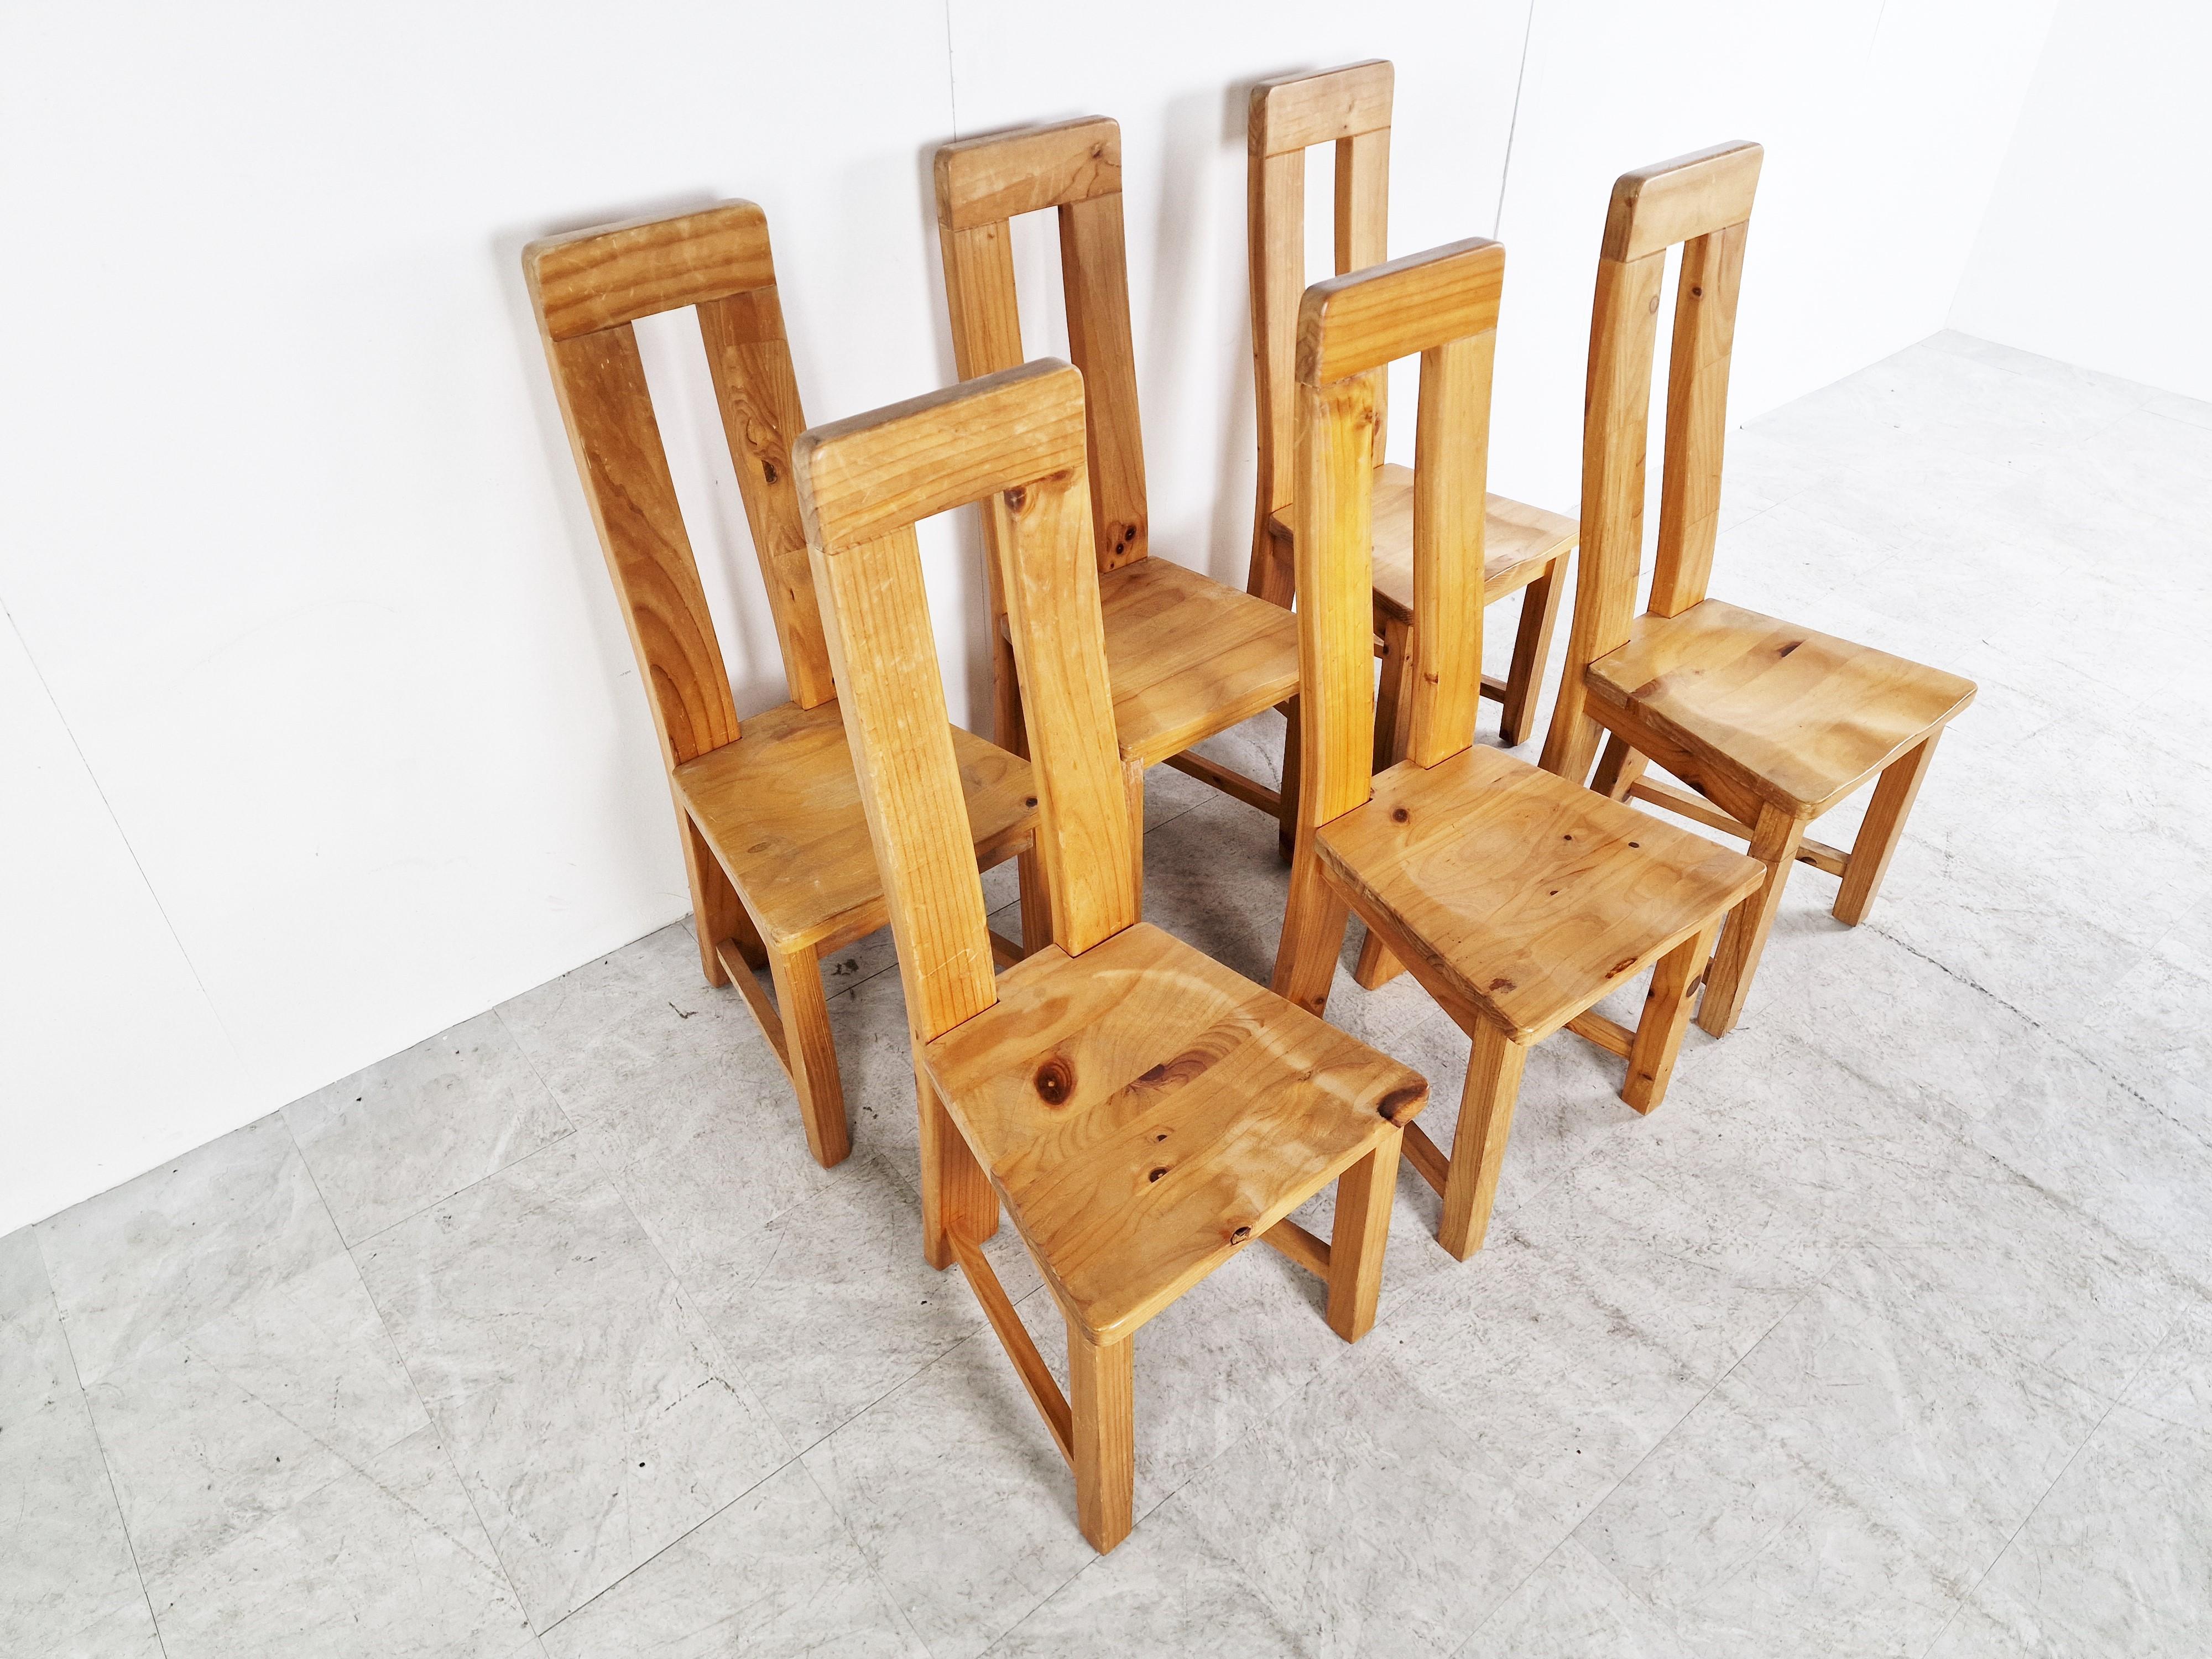 Ensemble de 6 chaises de salle à manger à dossier haut en pin massif.

Ils ont un design simple, fonctionnel et robuste qui est intemporel.

Les chaises sont en bon état général avec une usure normale liée à l'âge.

Les chaises donnent une